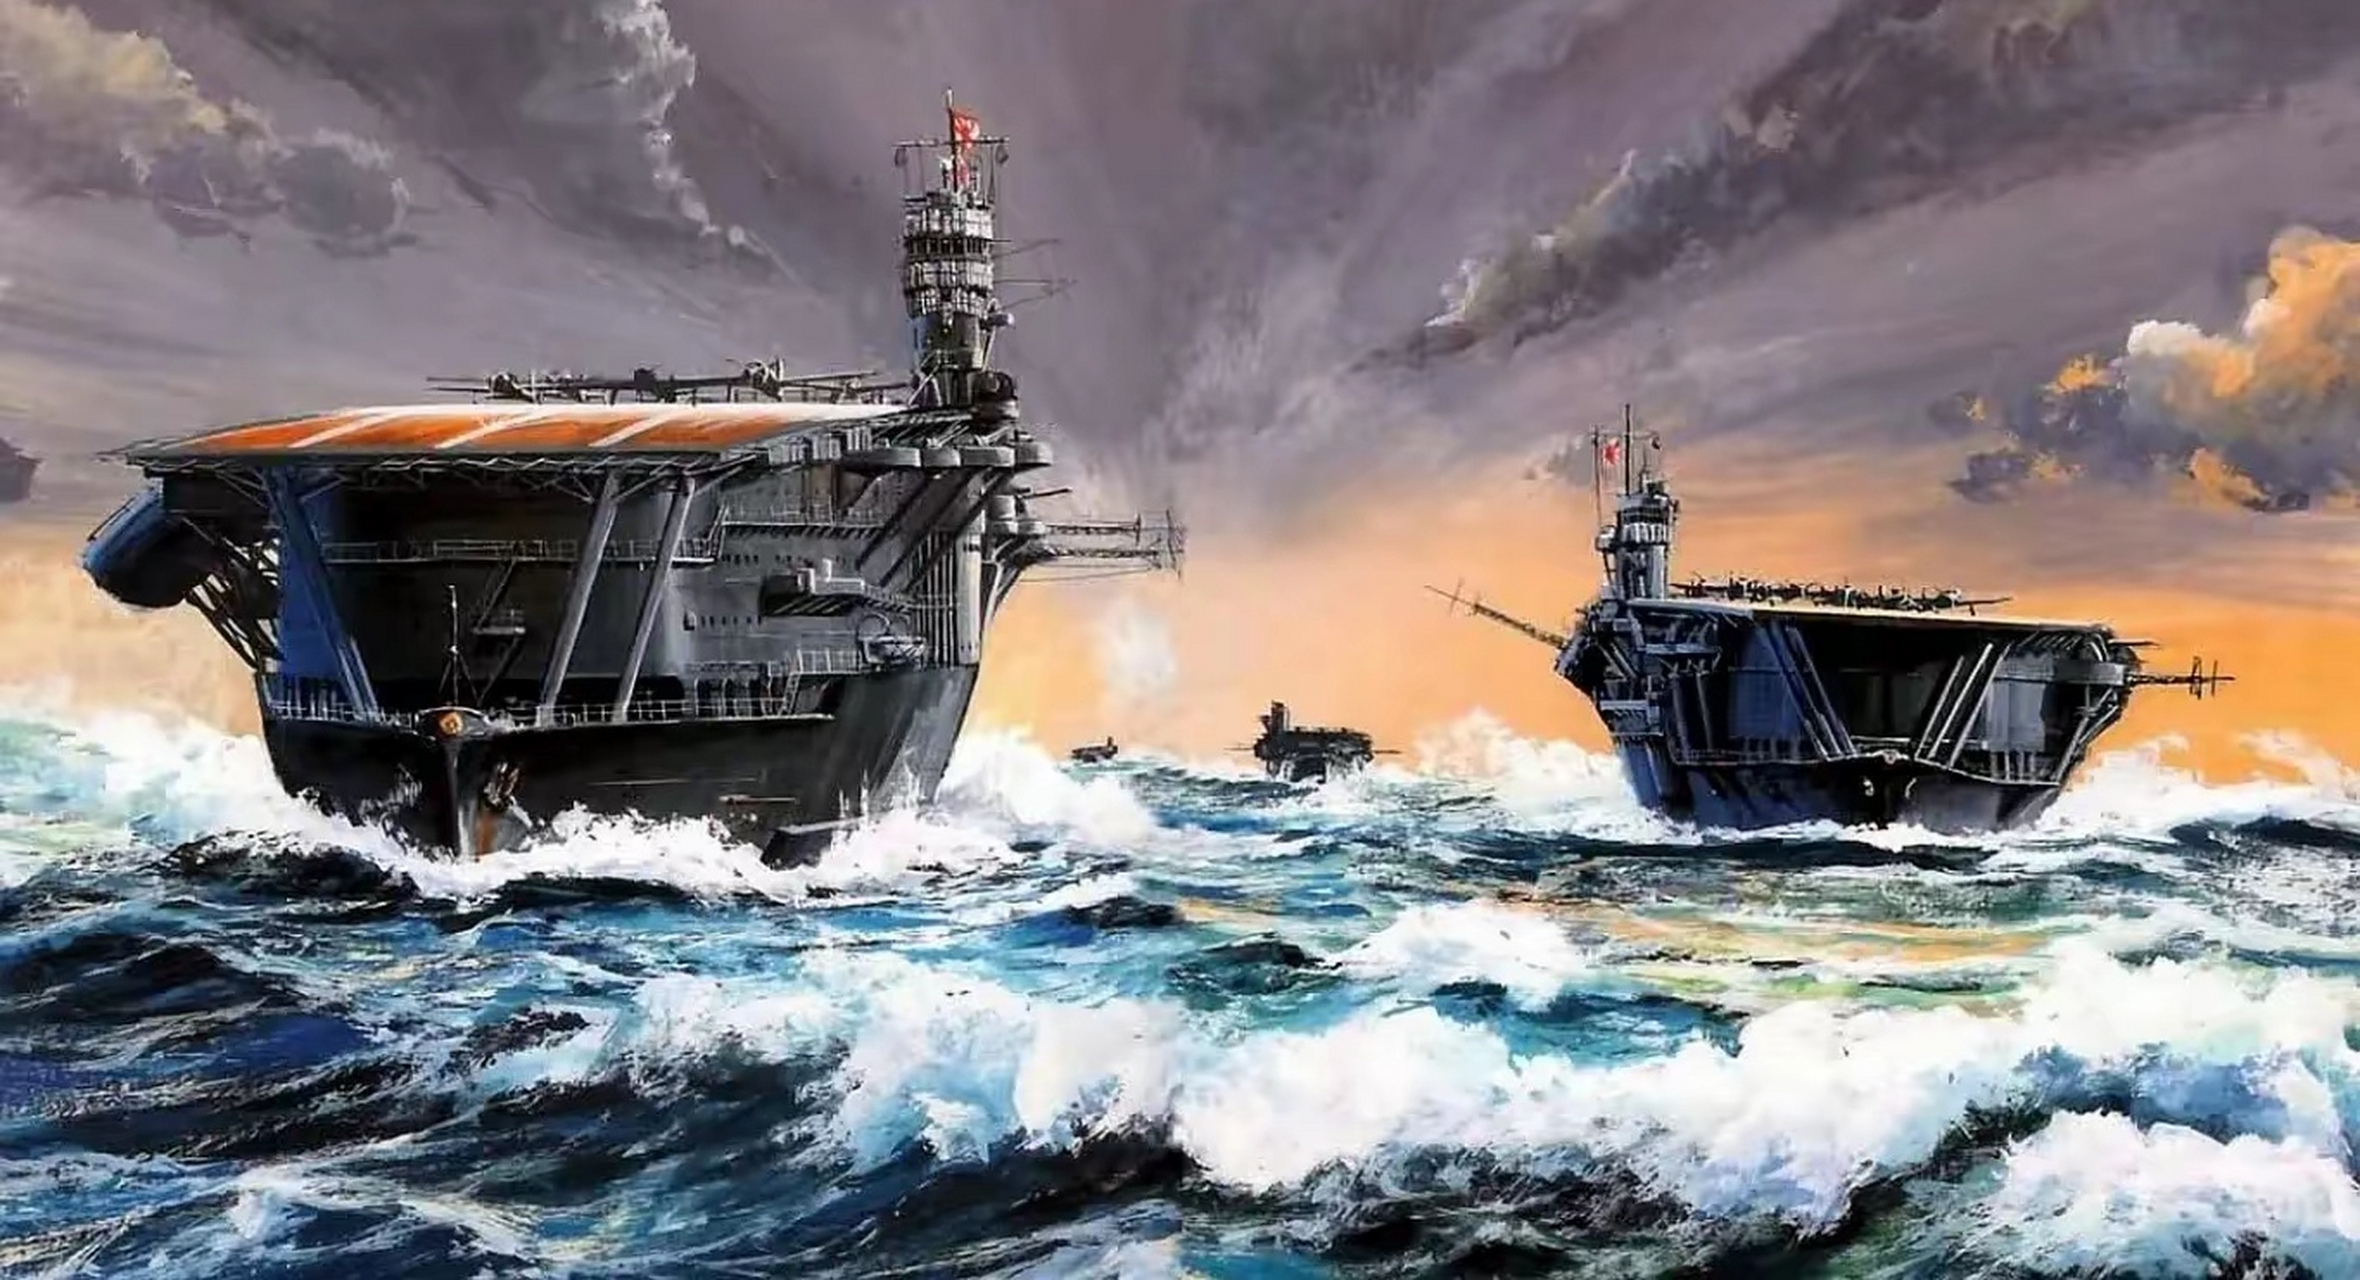 分享一组二战军事题材绘画作品,描绘了双方海军的航空母舰航行和战斗